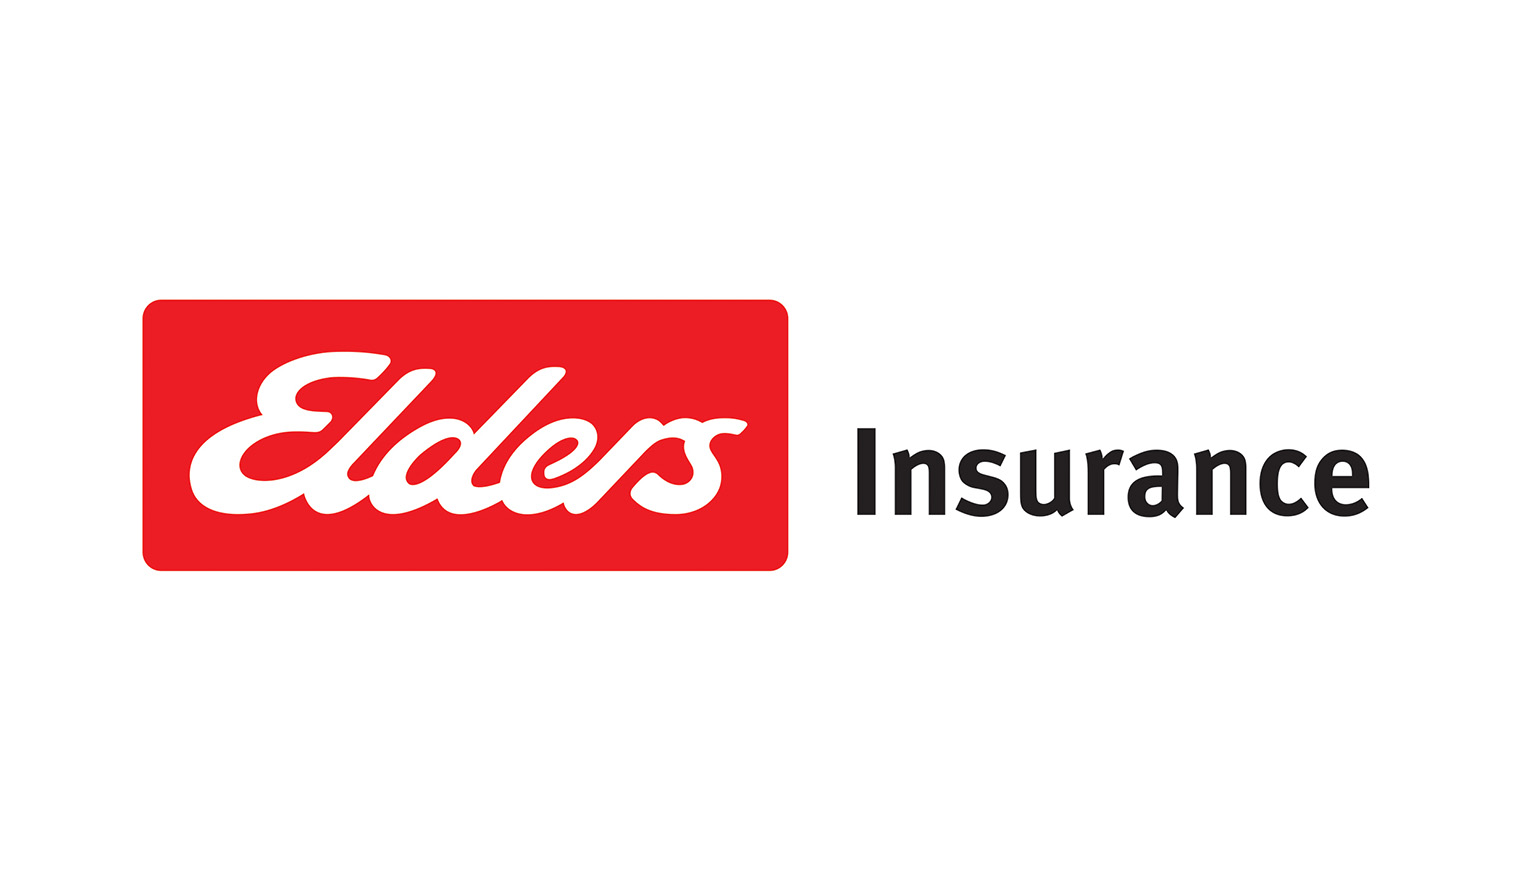 Elders+Insurance+logo+CMYK+landscape_NEW